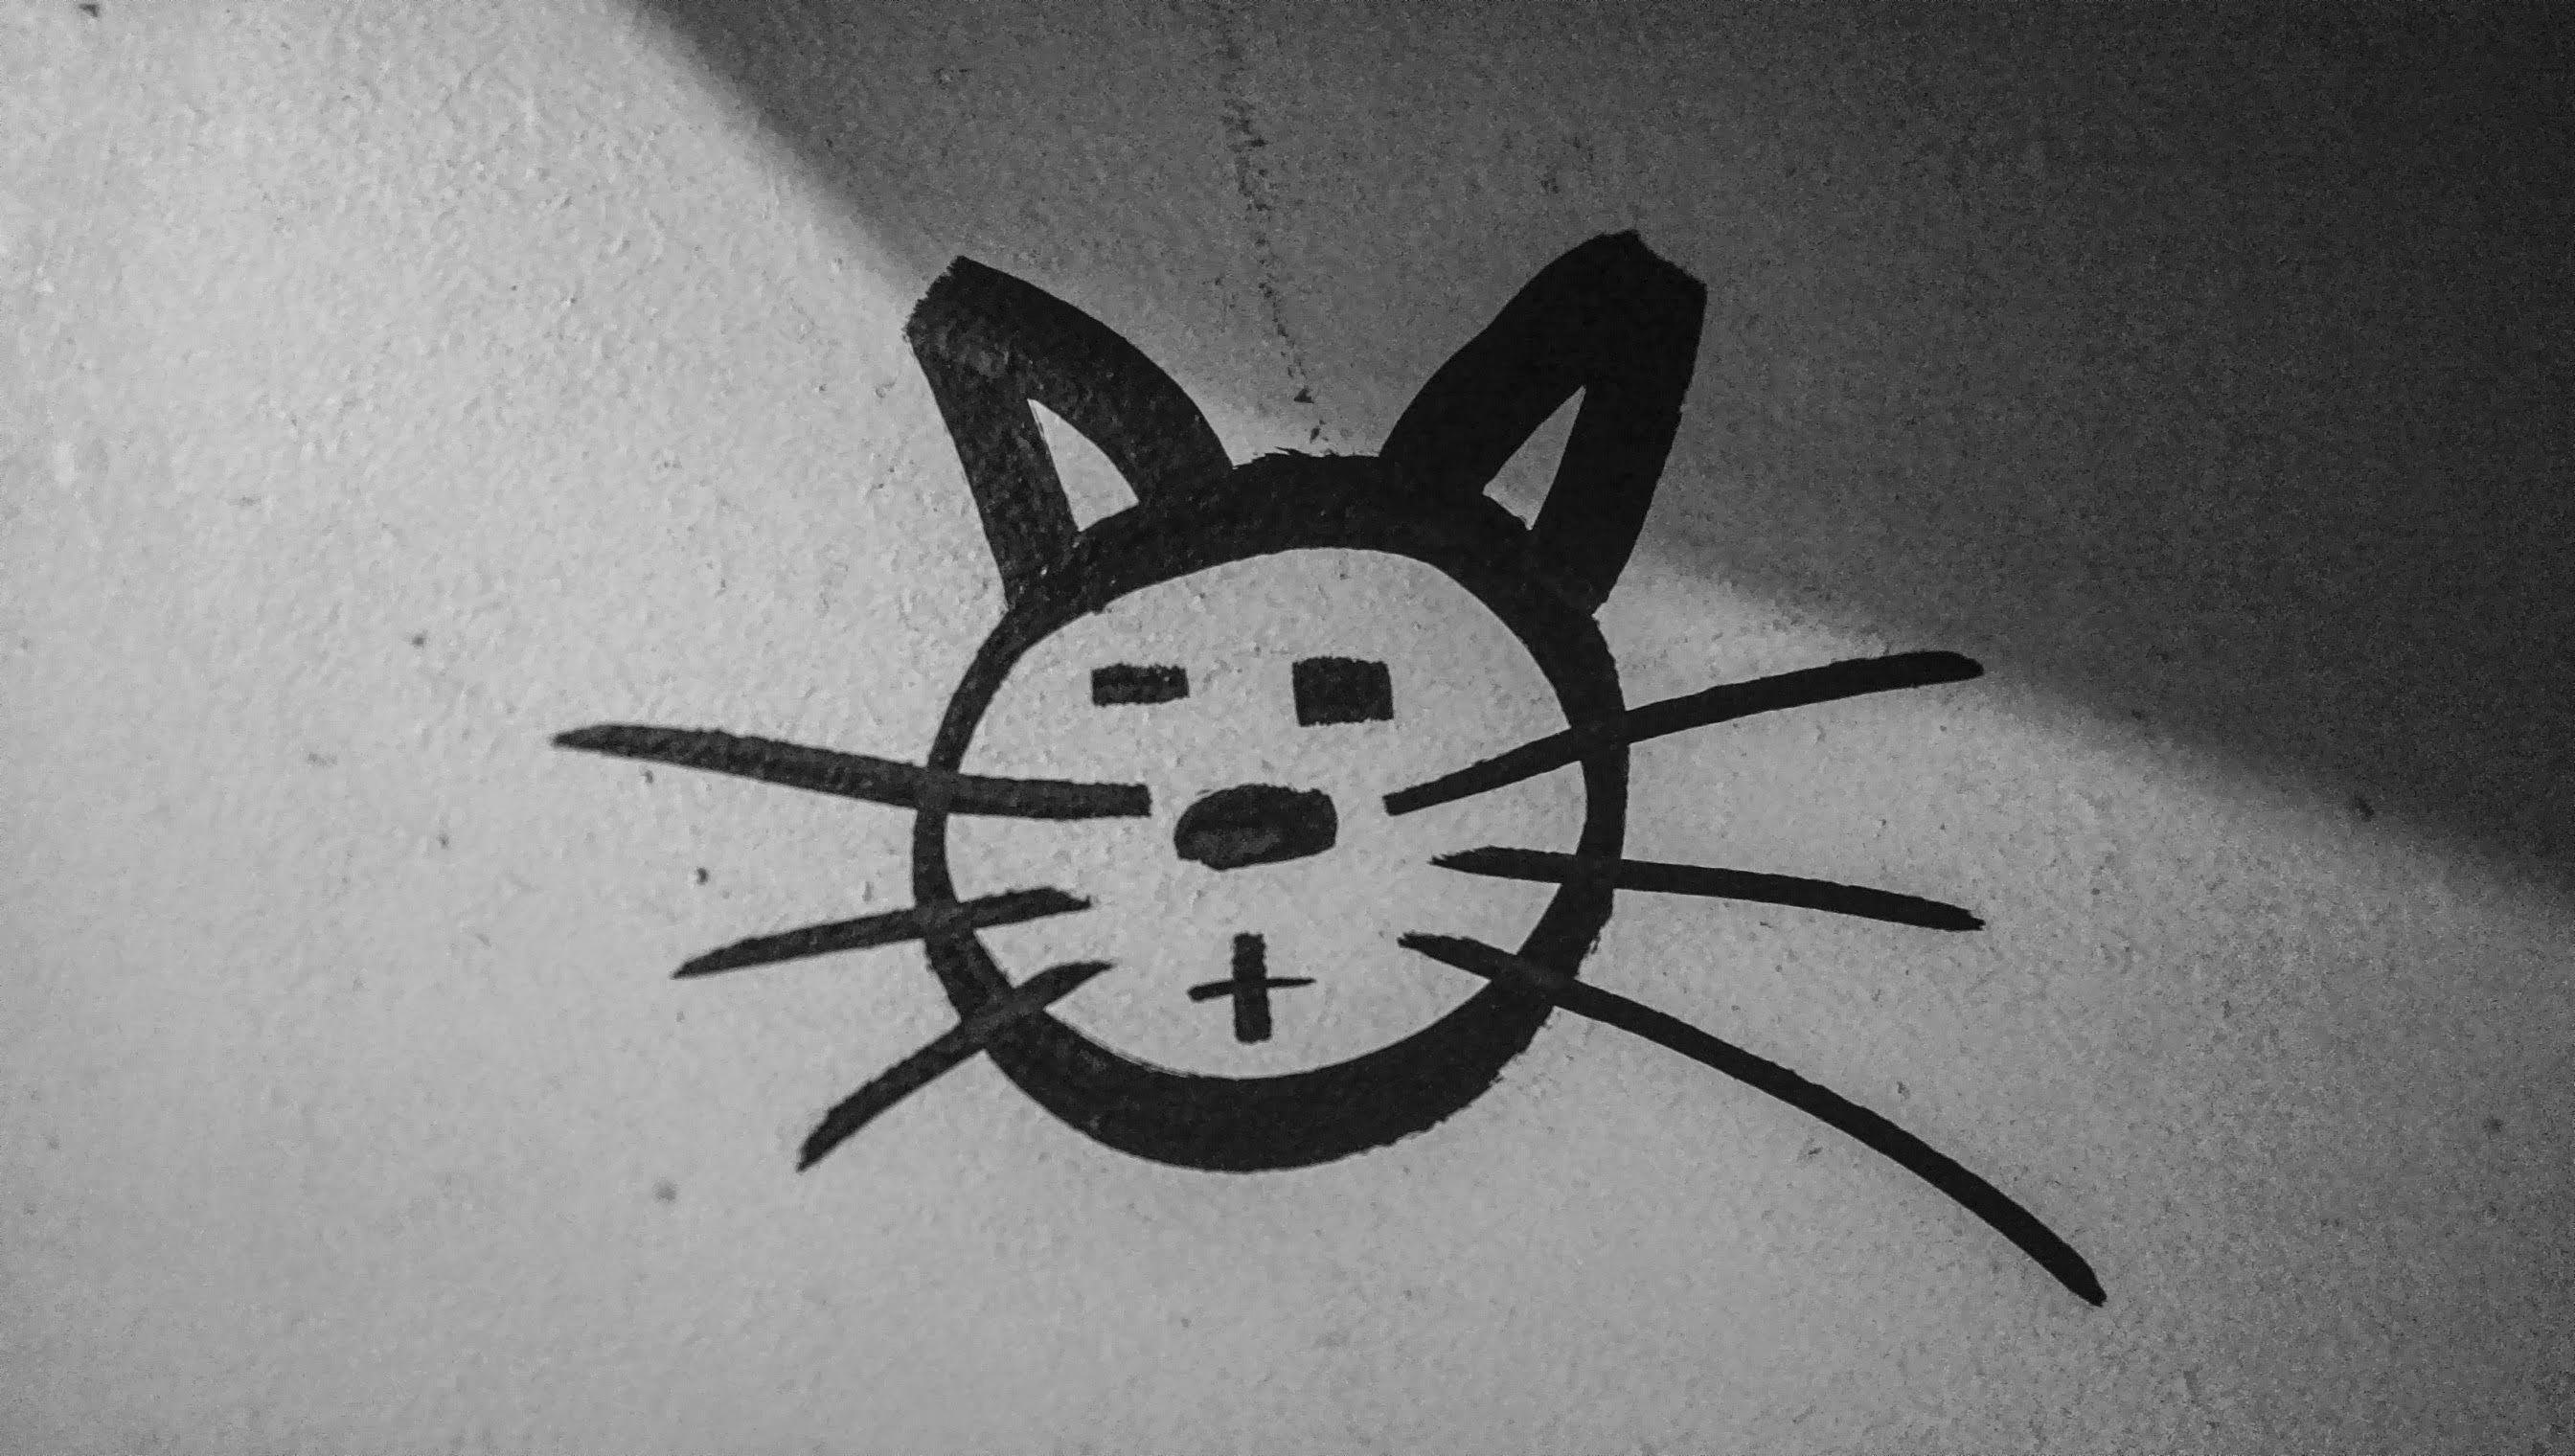 1920x1080 wallpaper | cat sketch | Peakpx